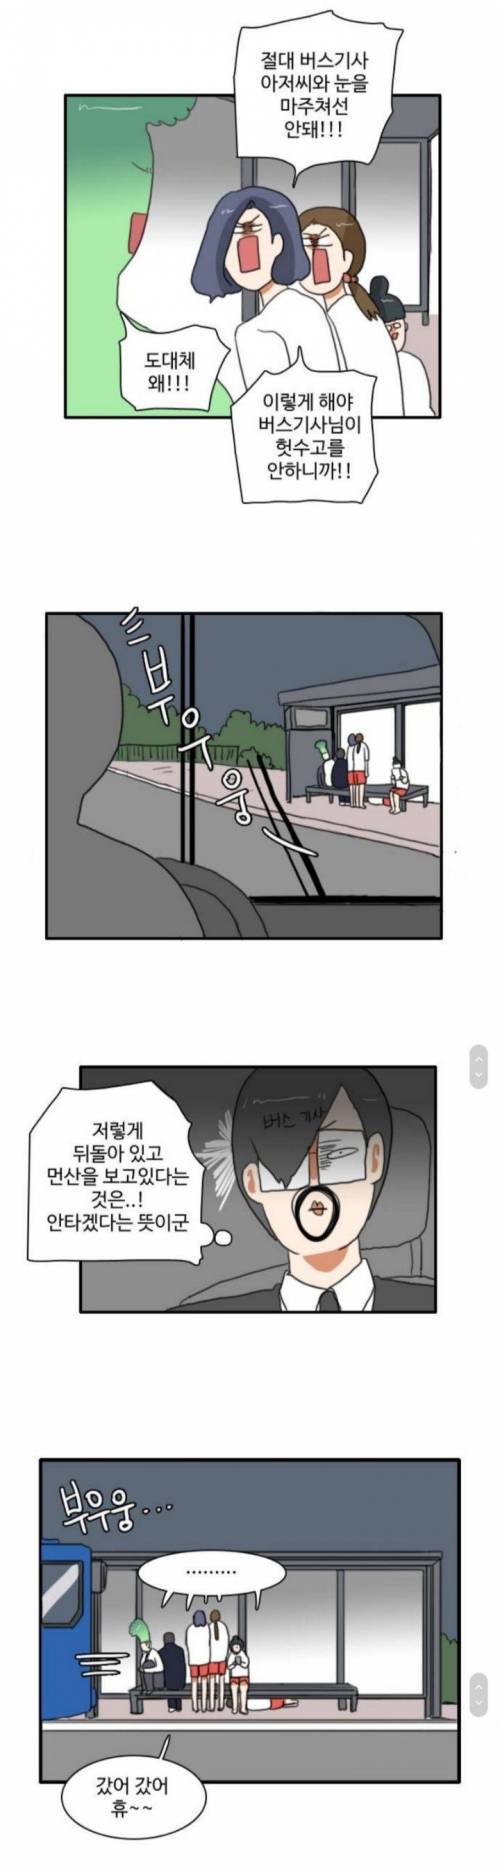 [스압] 한국사람들 버스 탈 때 국룰.jpg